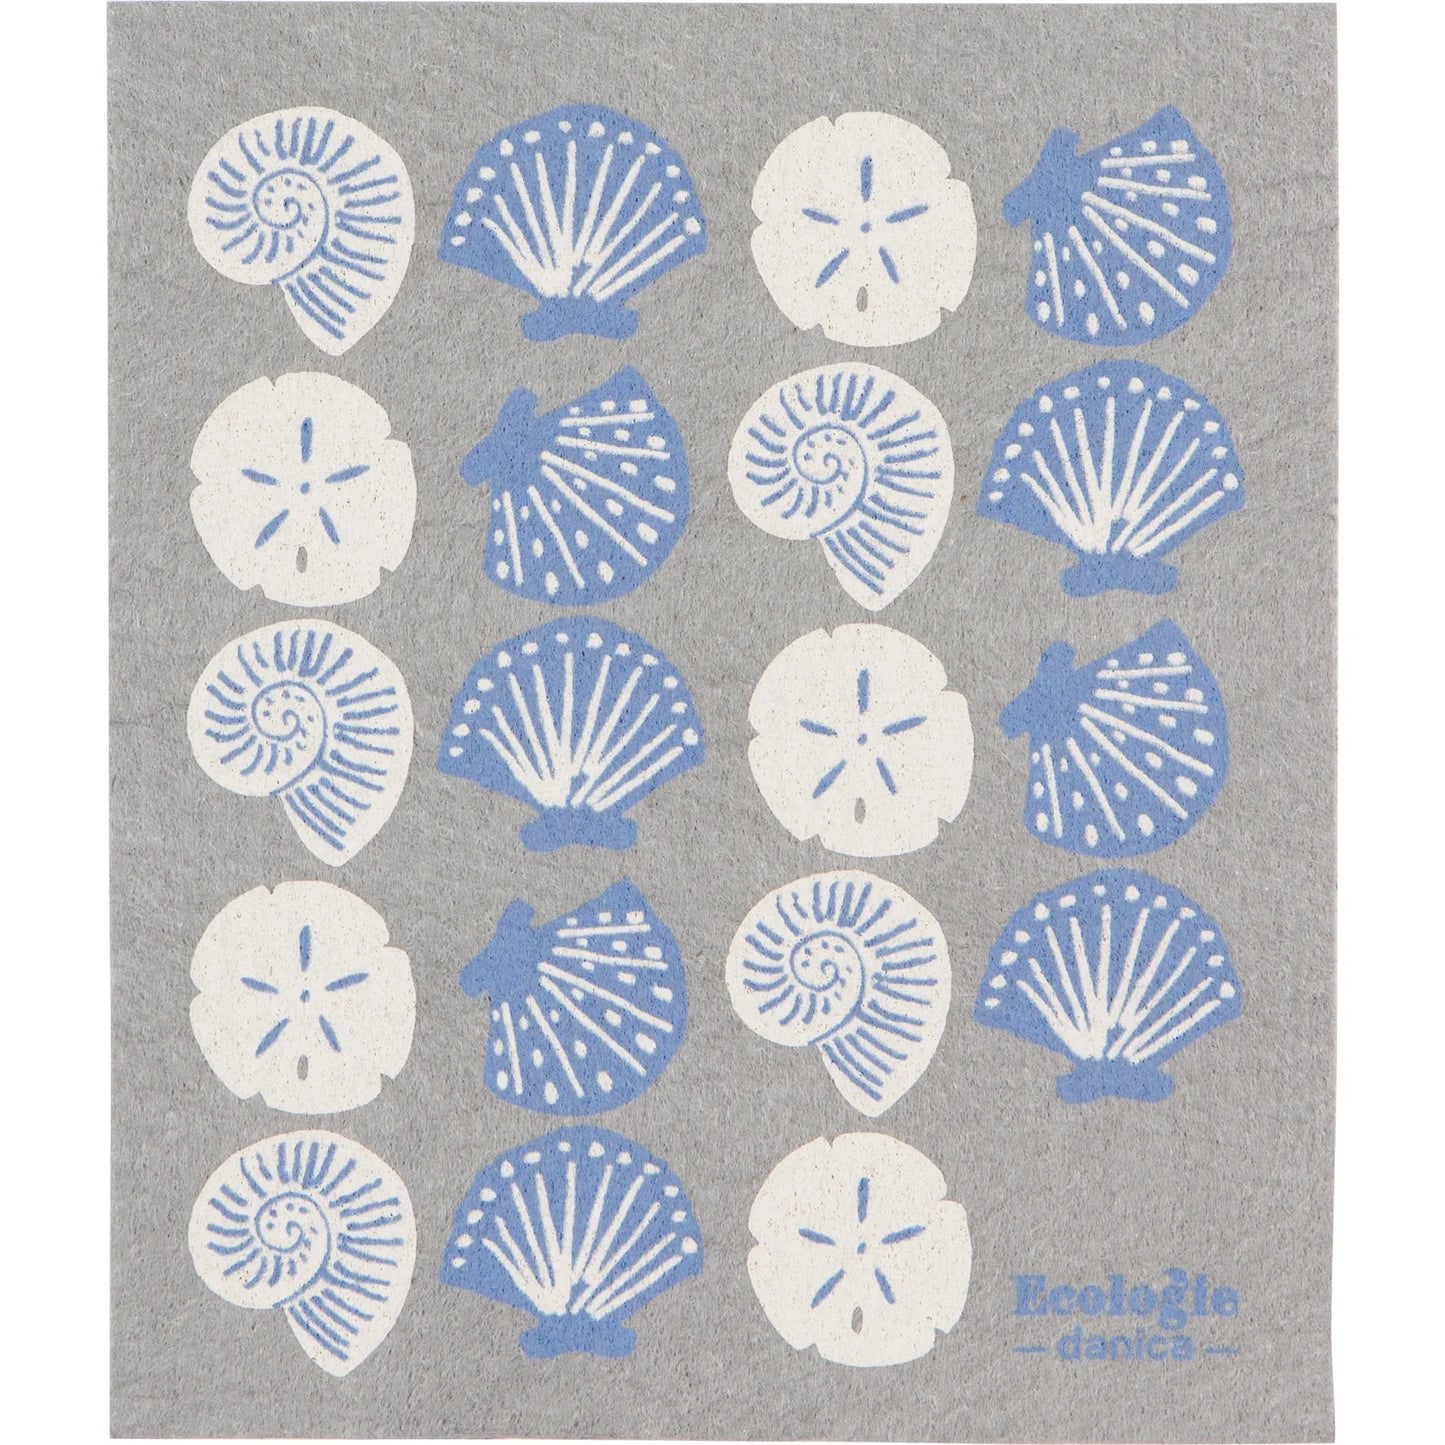 Seaside Shells - Swedish Dishcloth